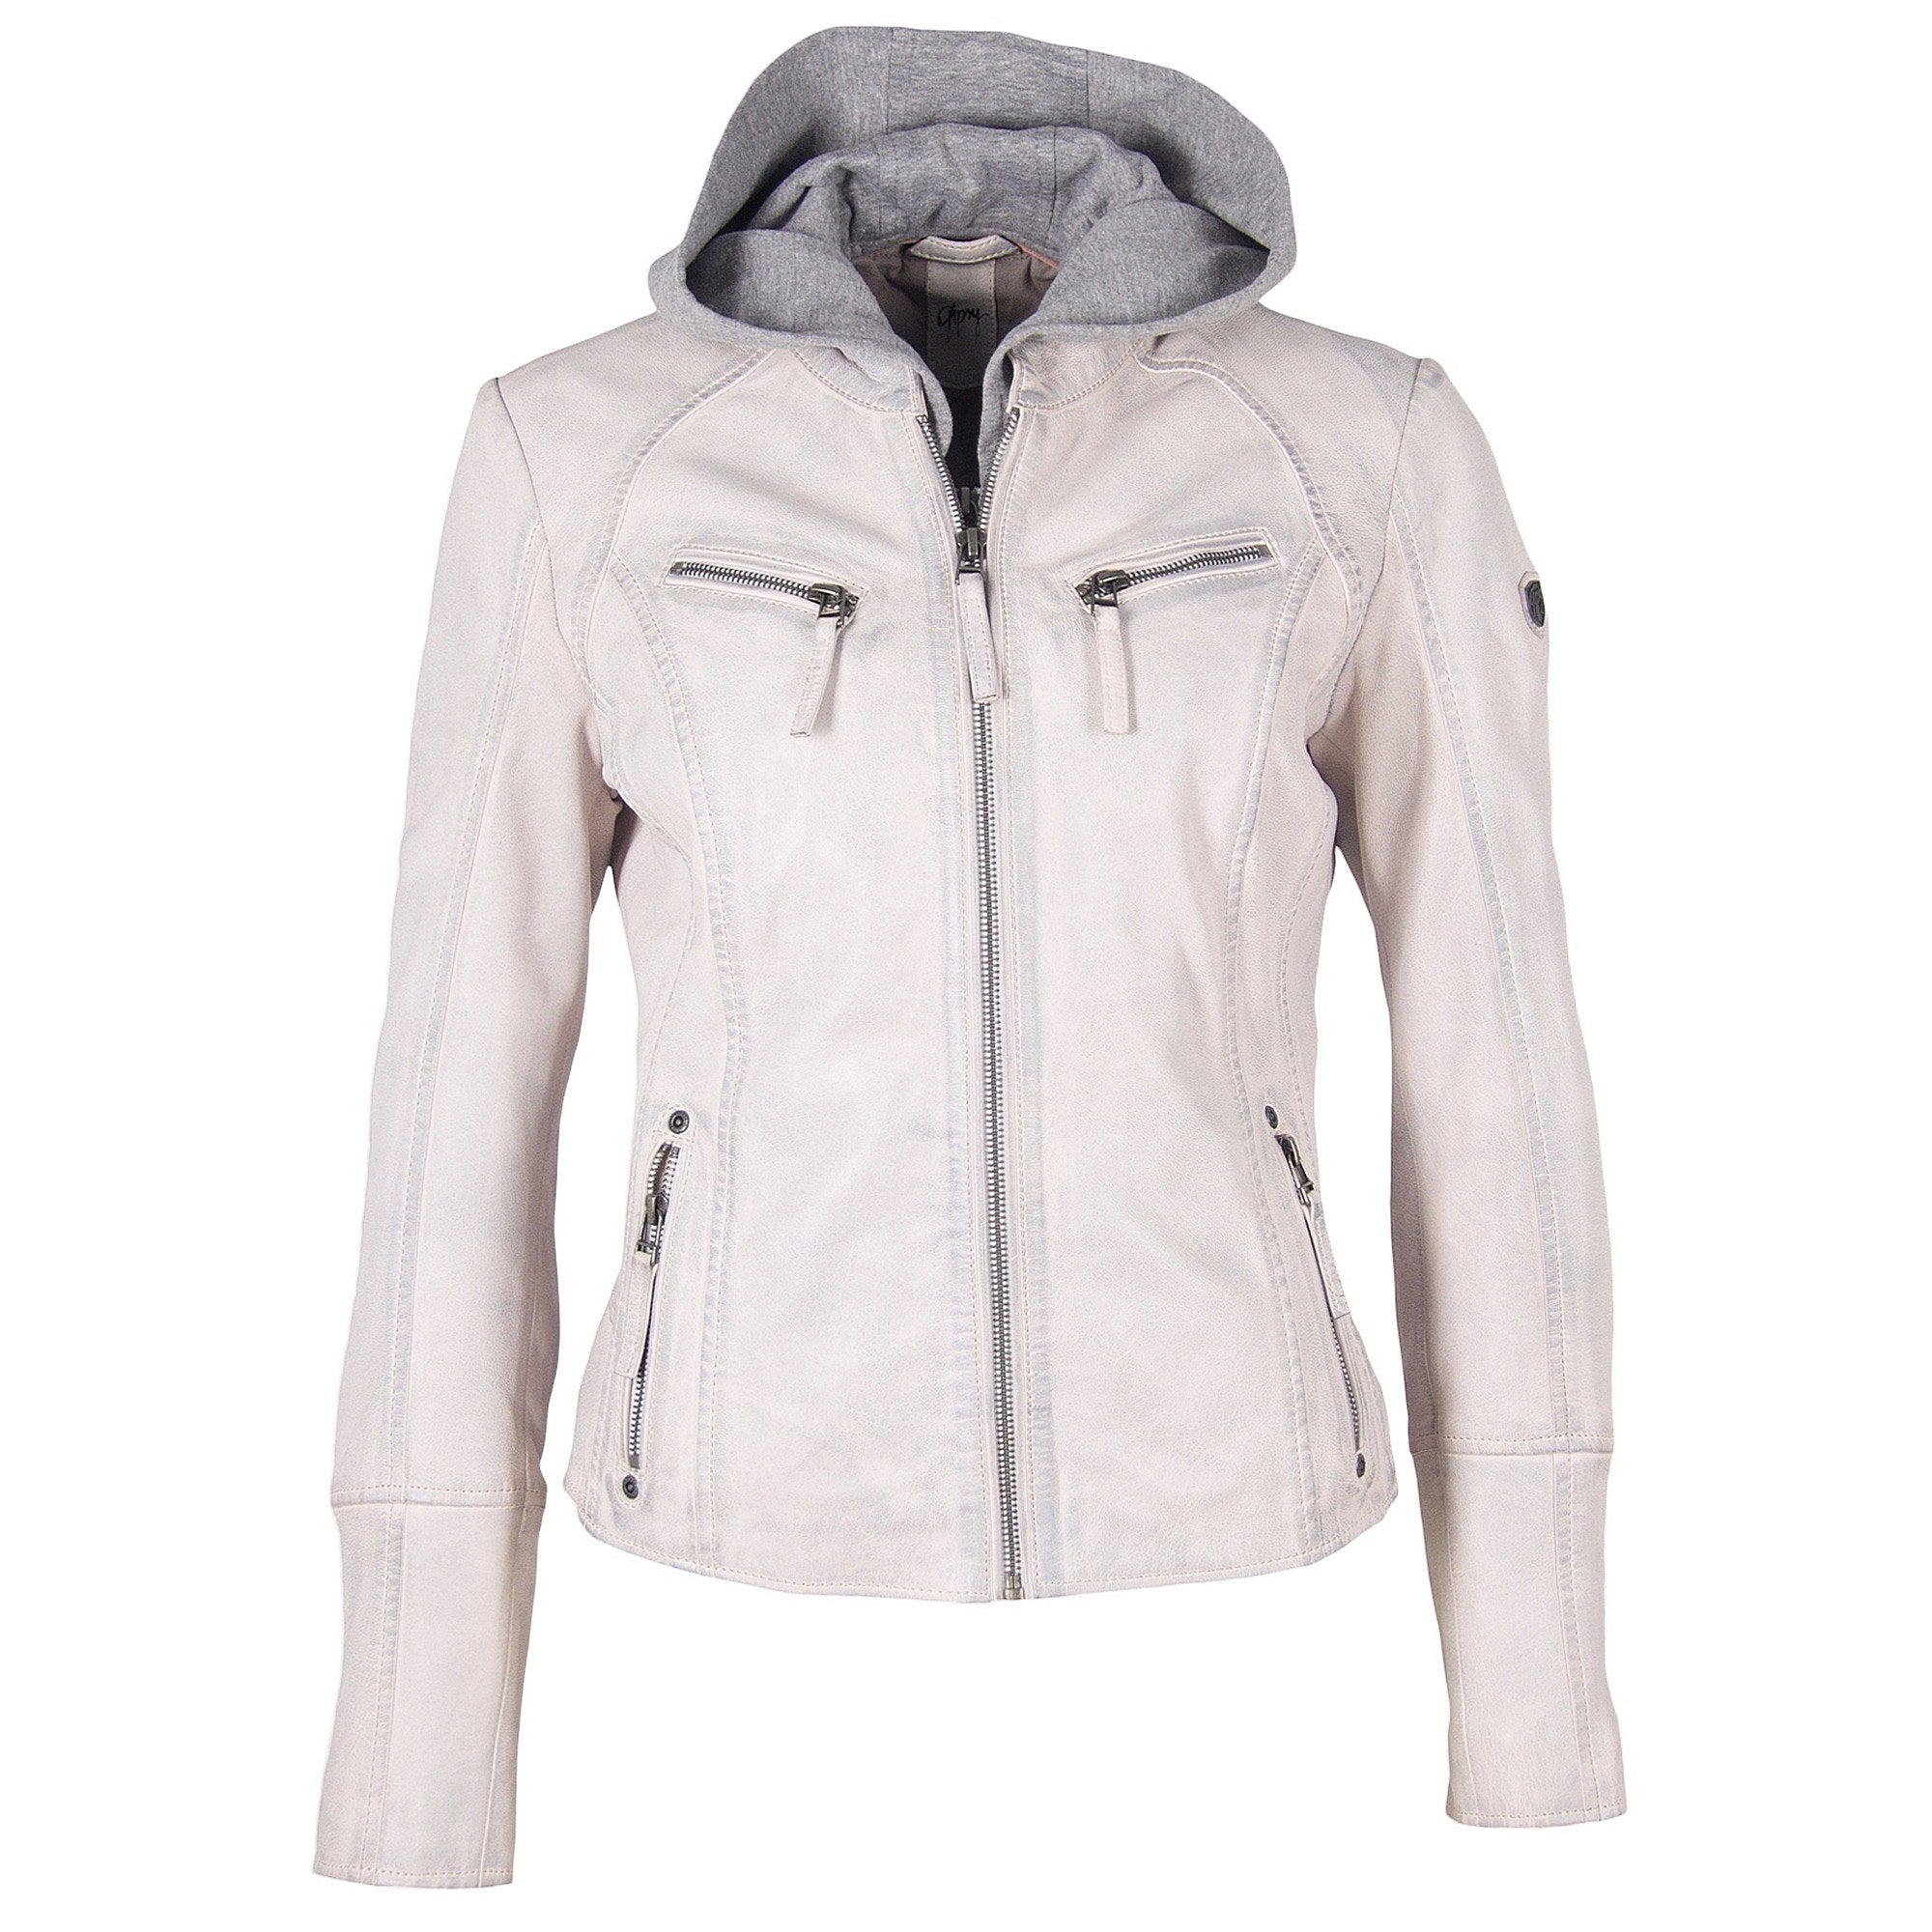 Nola RF Leather Jacket, White – mauritiusleather